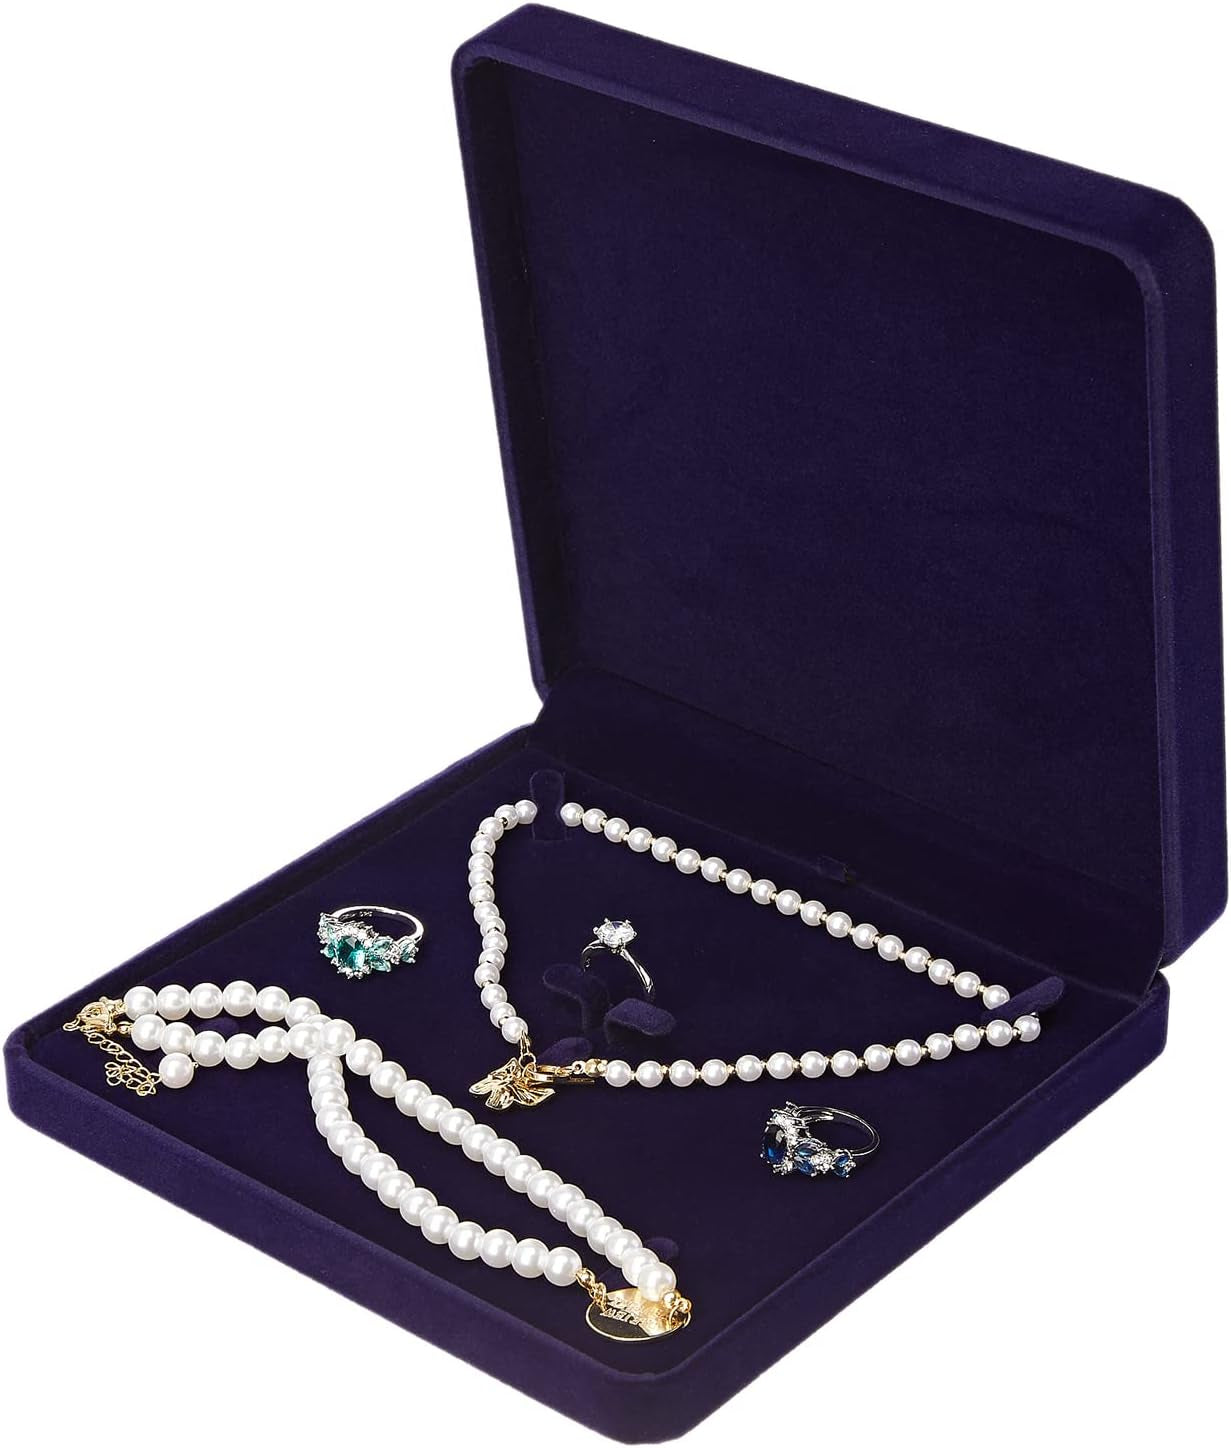 LETURE Velvet Jewelry Set Box, Velvet Gift Box for Bracelet Necklace Earring Ring (Red)